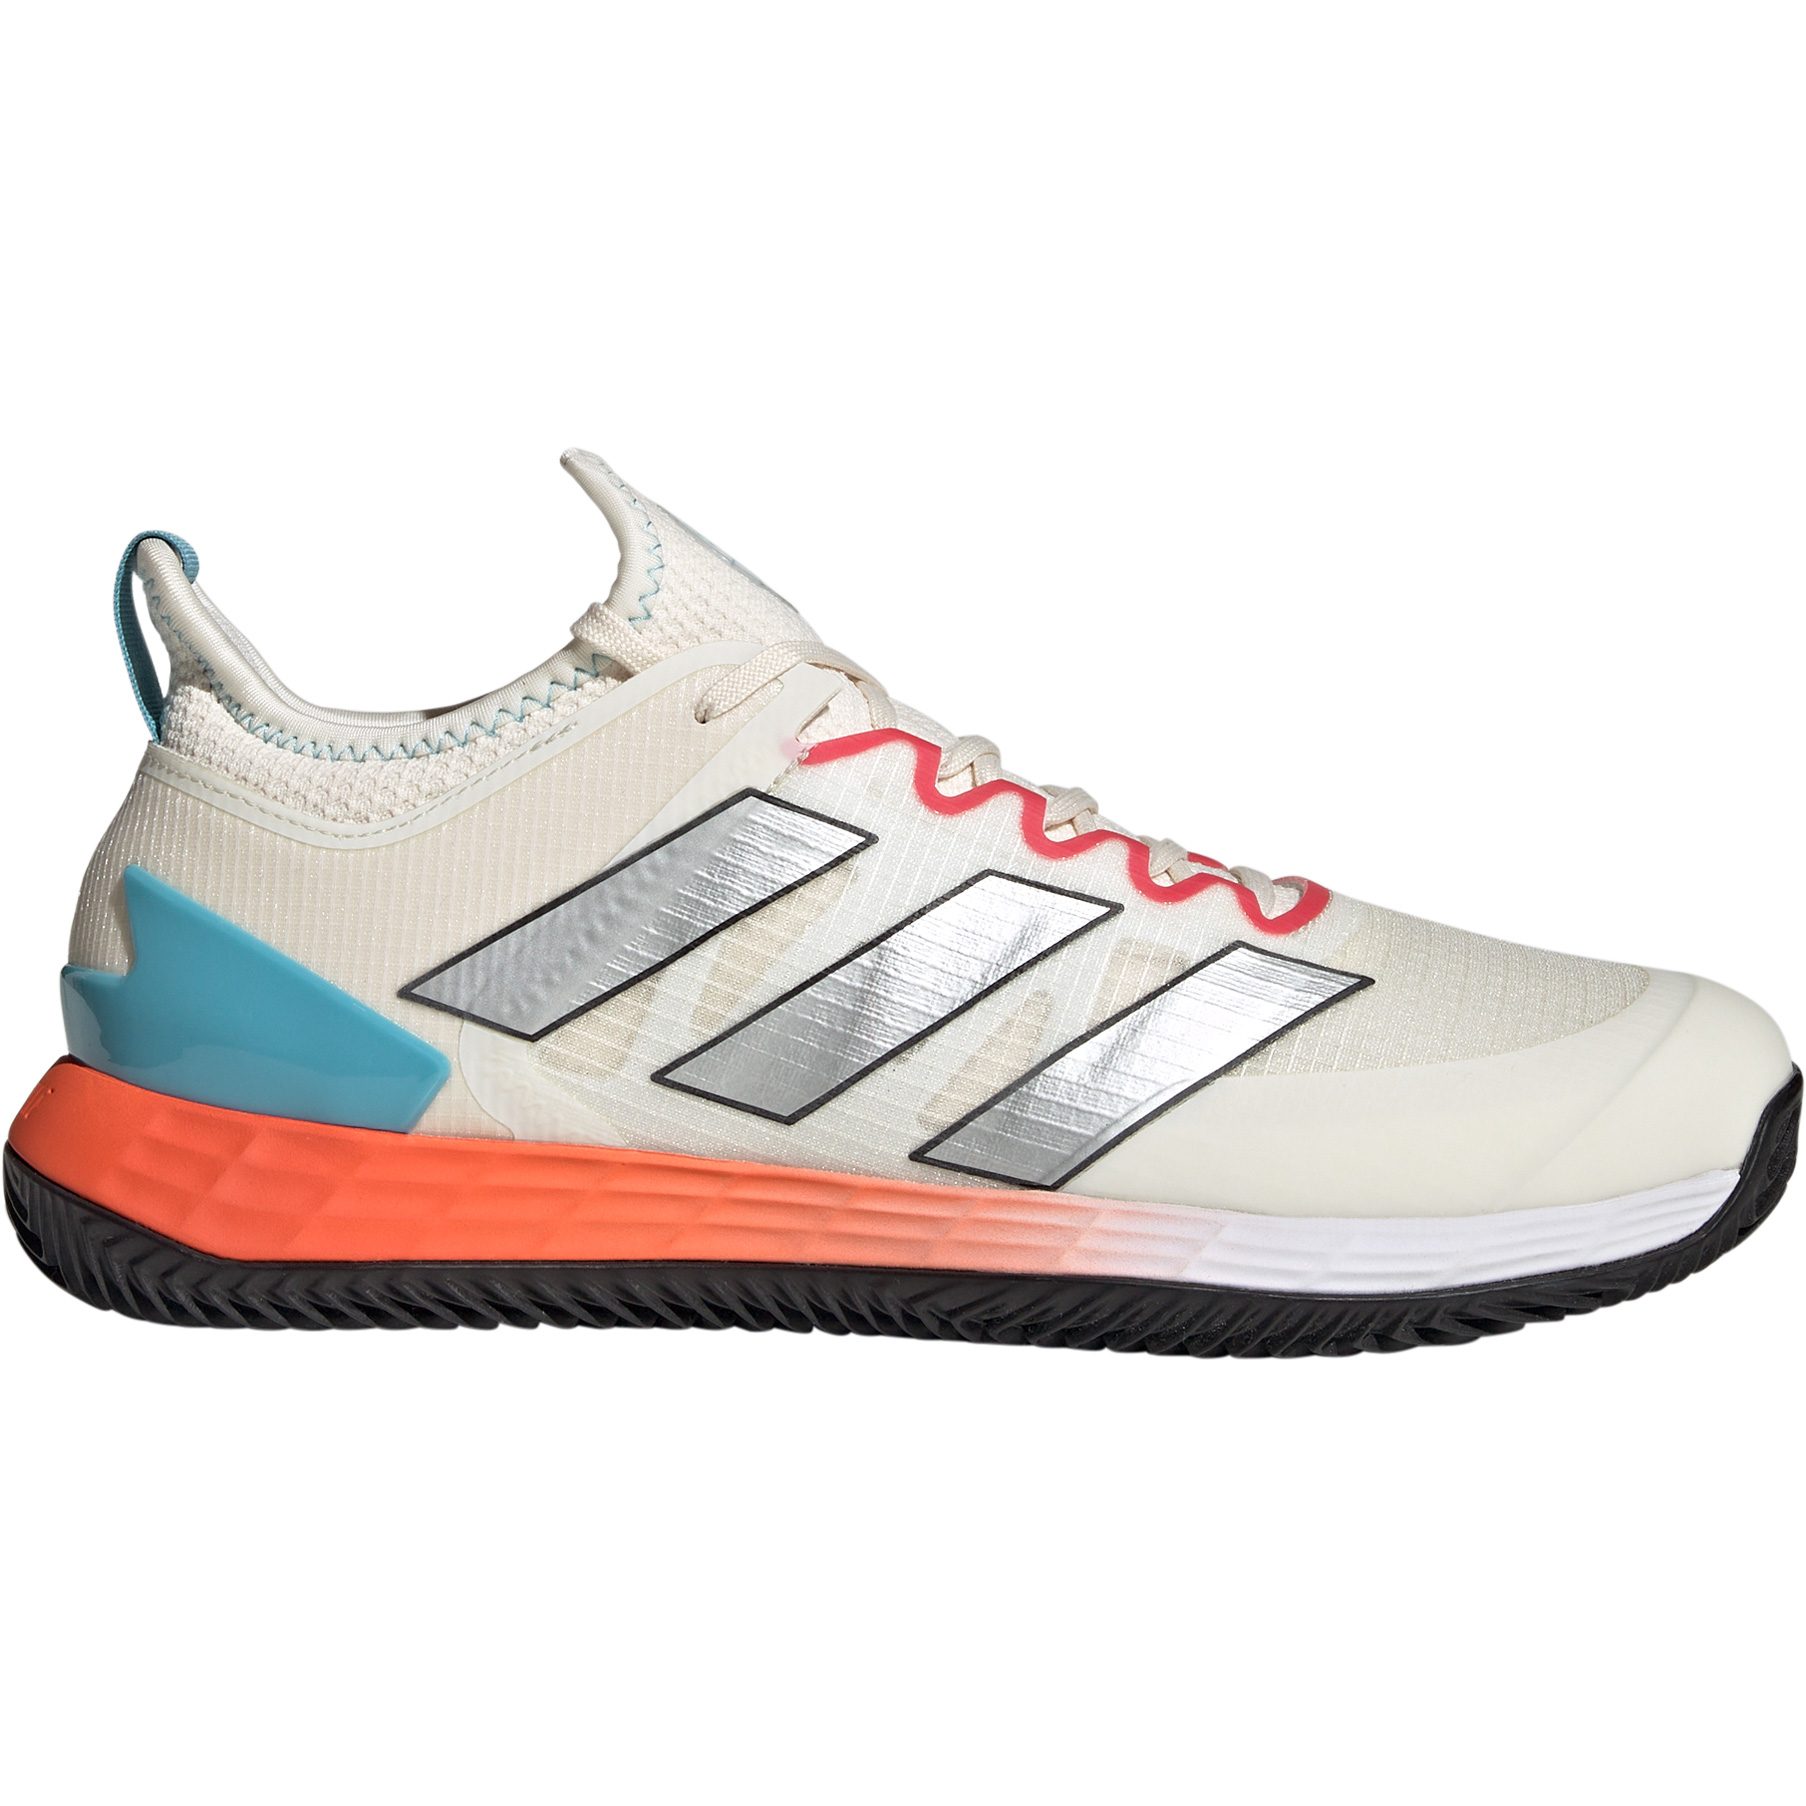 adidas - Adizero Ubersonic 4 Clay Court Tennisschuhe Herren chalk white  kaufen im Sport Bittl Shop